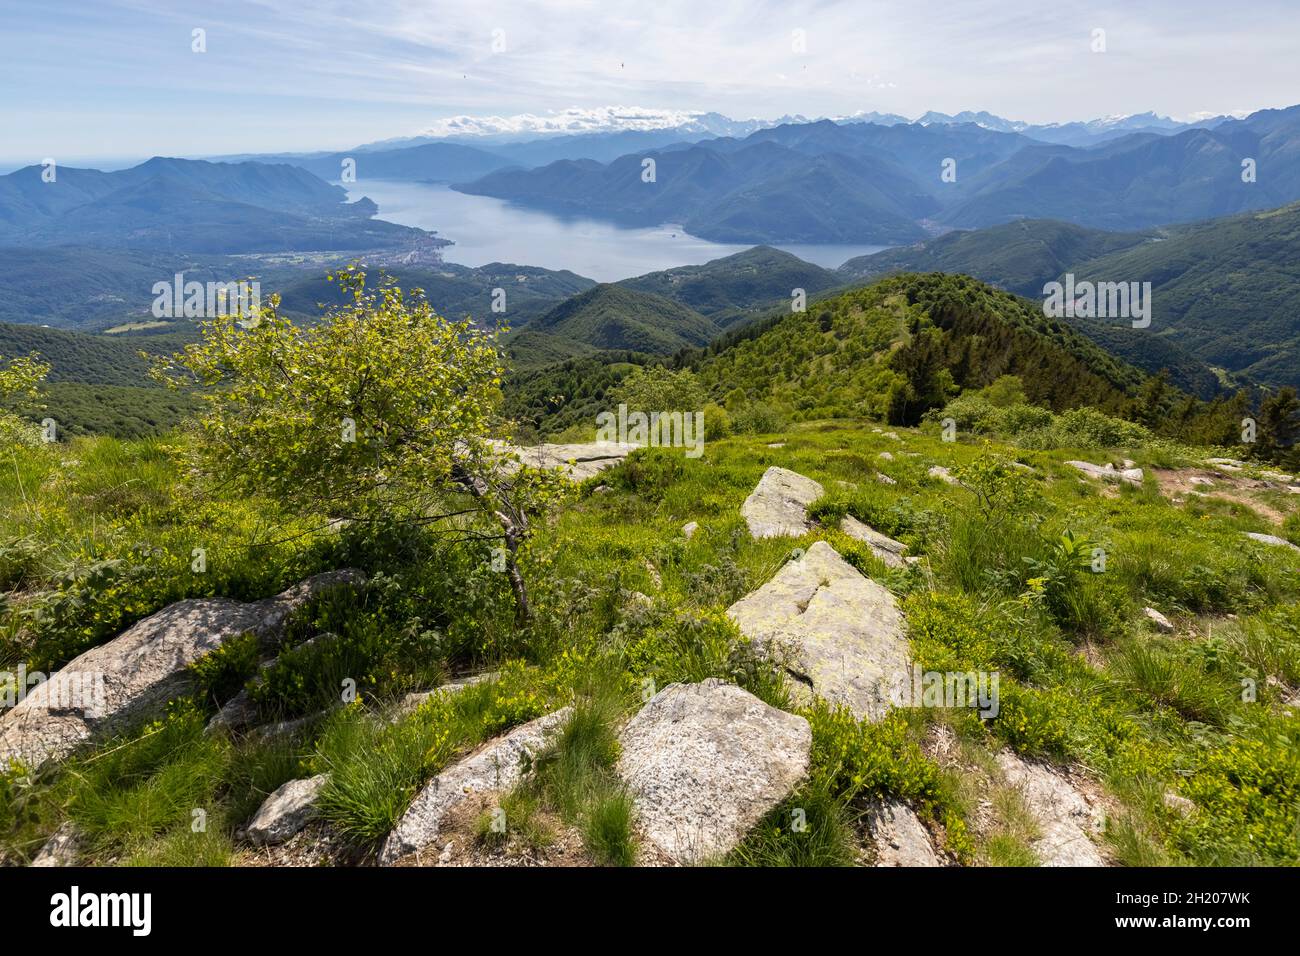 Vista sul Lago maggiore e sui monti del piemonte dalla cima del Monte Lema. Dumenza, distretto di Varese, Lombardia, Italia. Foto Stock